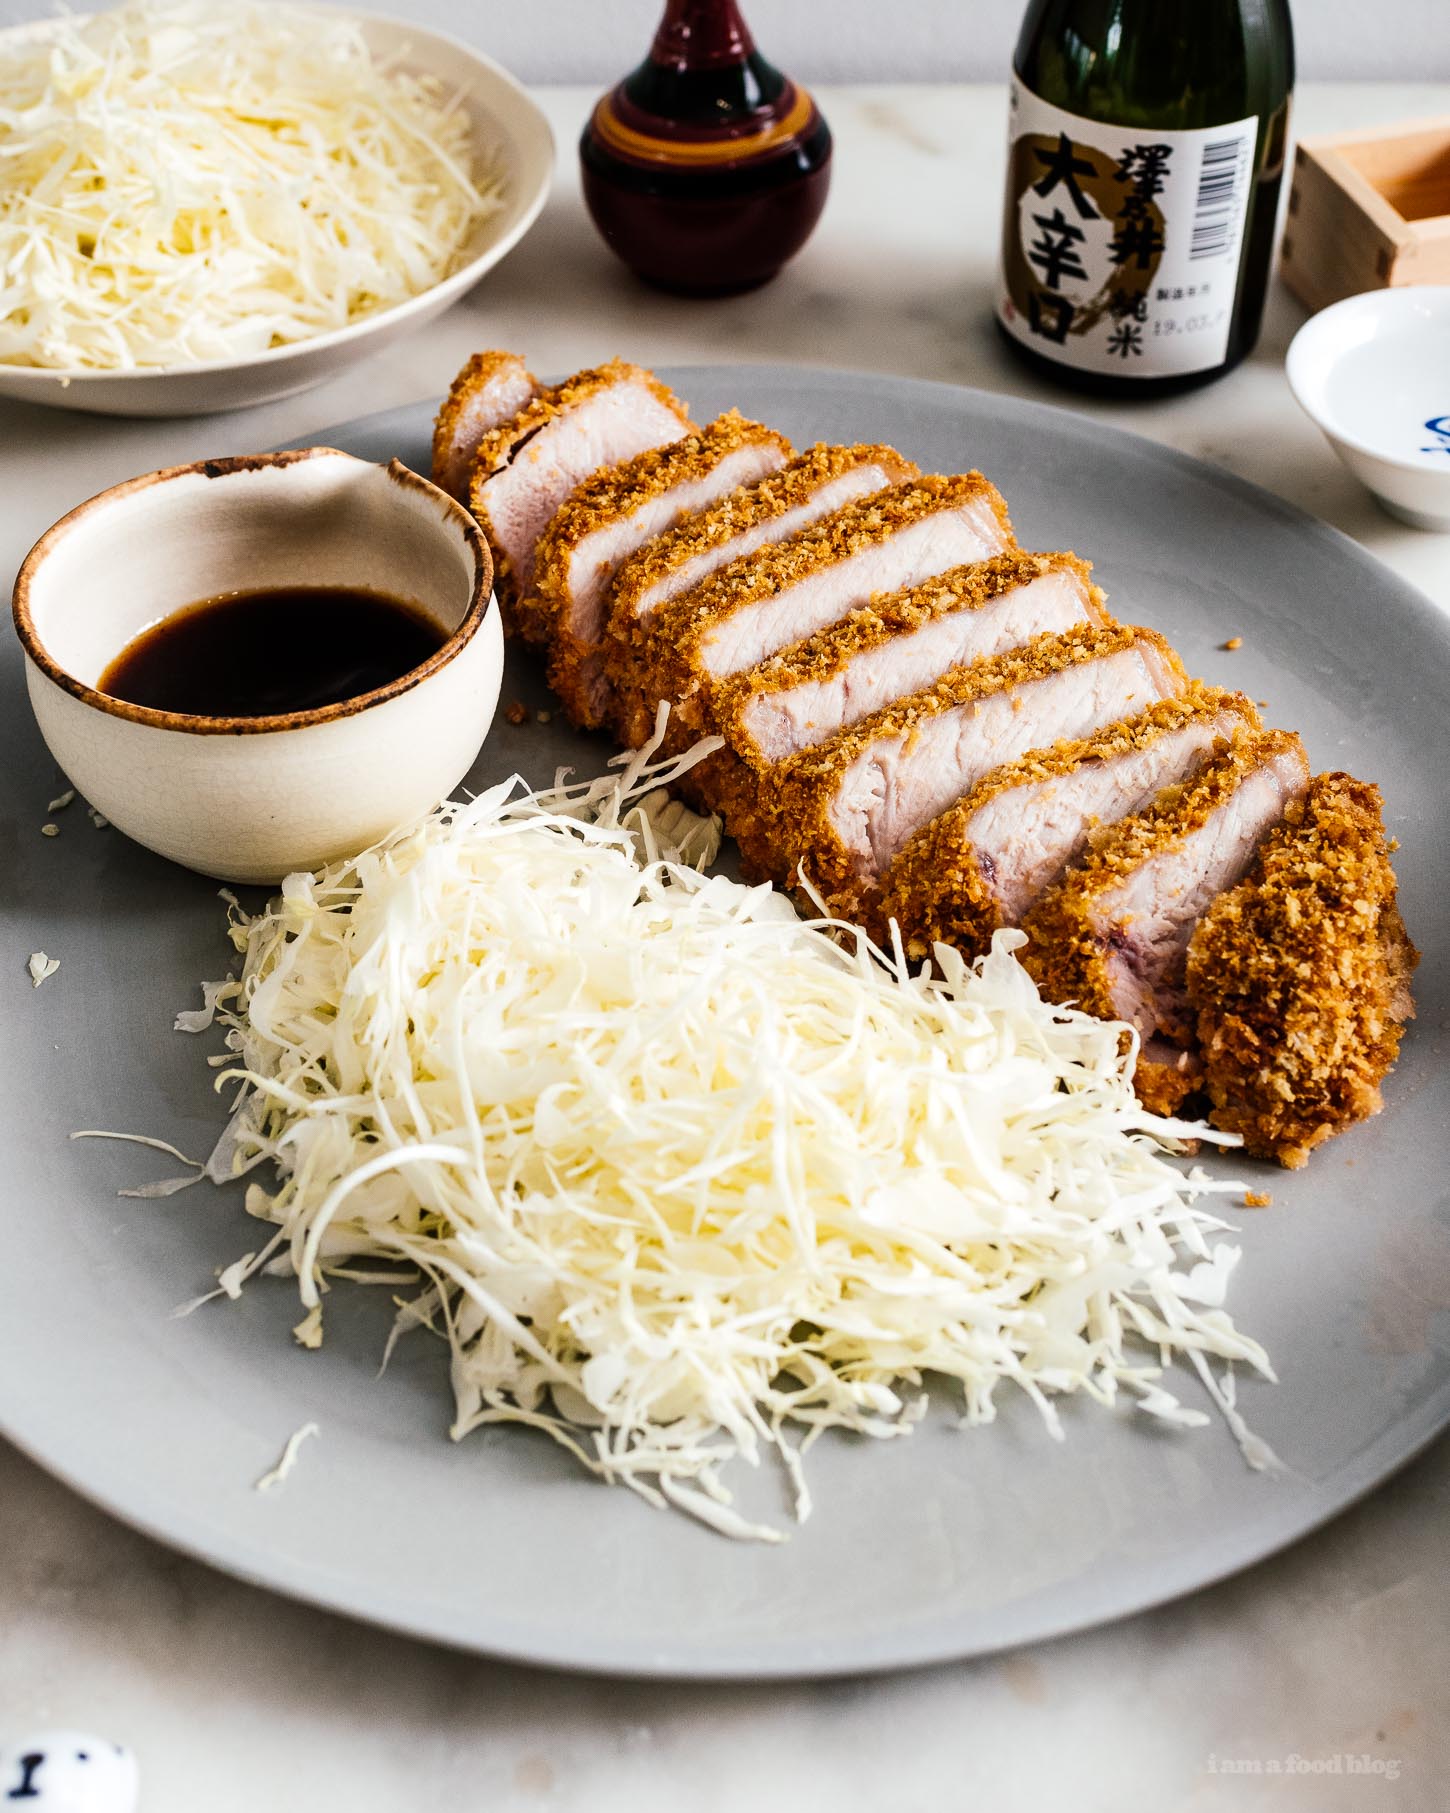 Tonkatsu de porc cuit au four facile: Une côtelette de porc extra épaisse et super juteuse préparée à la manière de tonkatsu, avec du panko léger et croustillant, seulement cuit au lieu d'être frit.  #japanesefood #japanese #tonkatsu #porkchop #pork #recipes #ovenbaked #dinner #easydinner